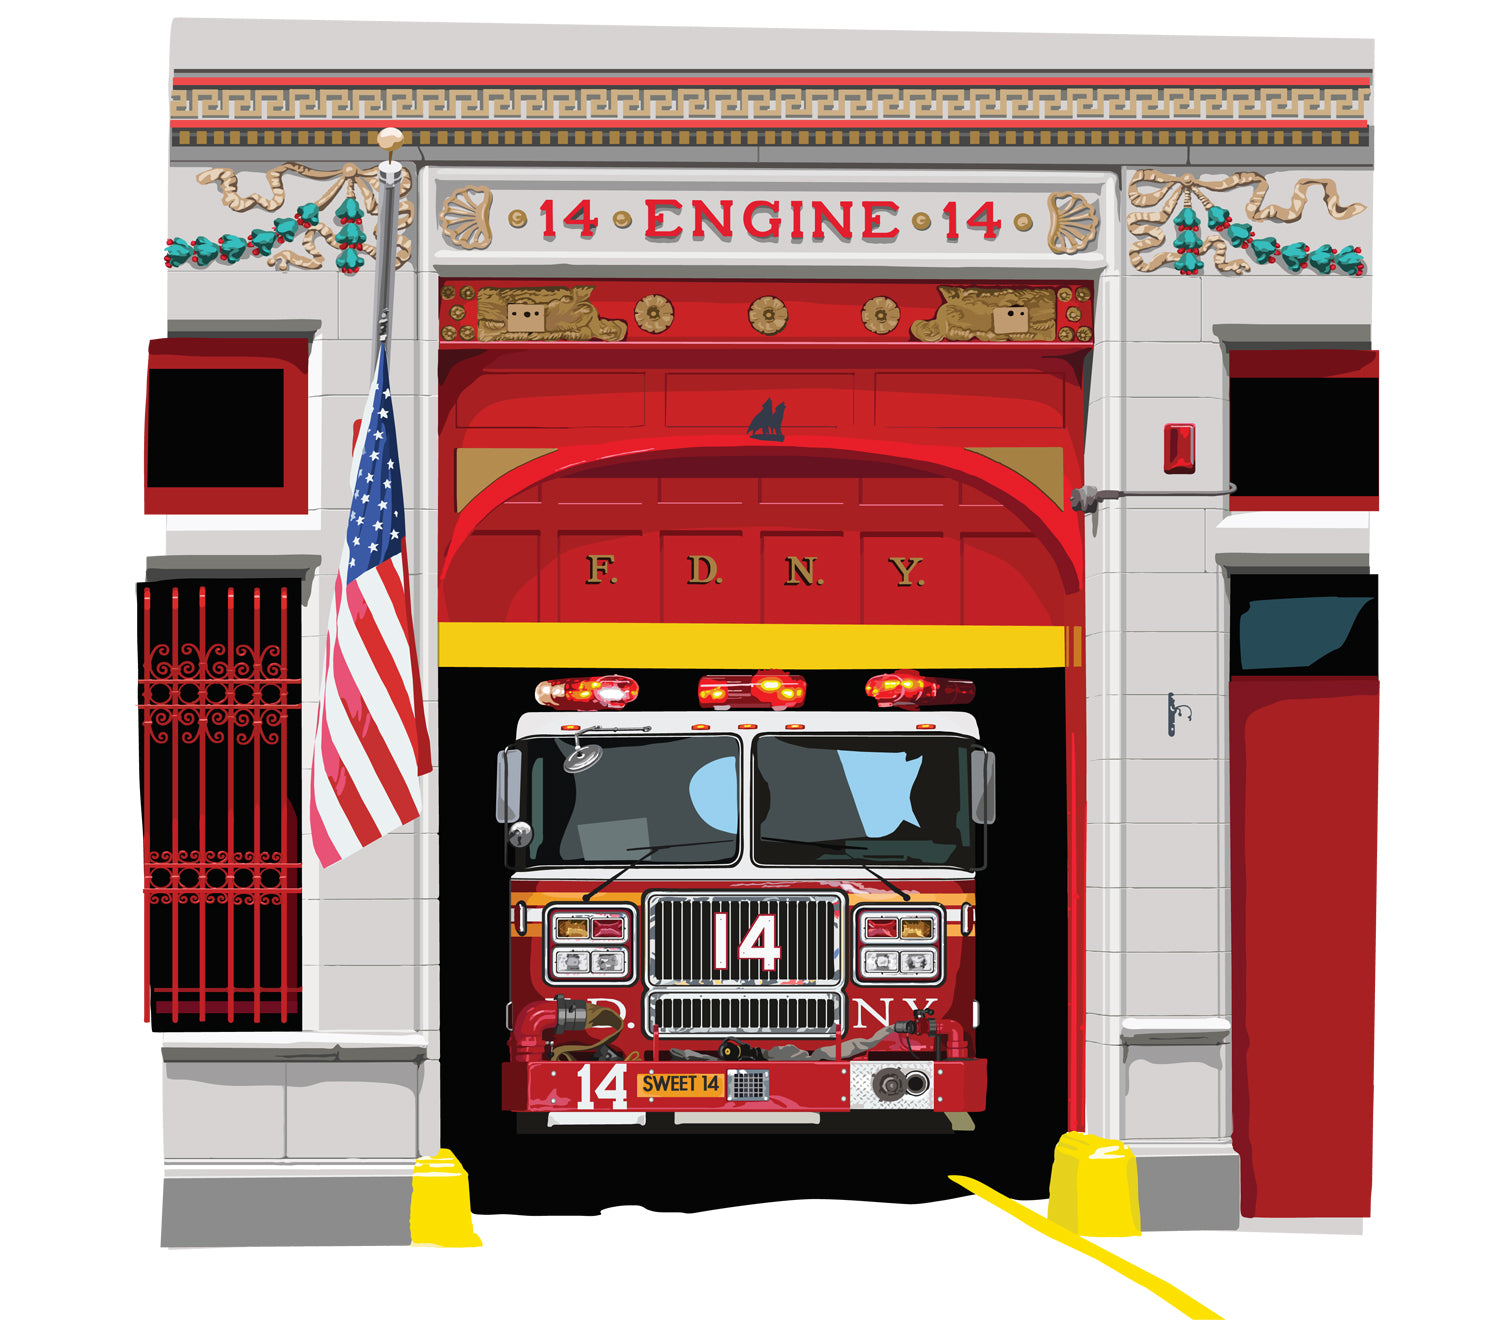 F.D.N.Y.  Engine 14